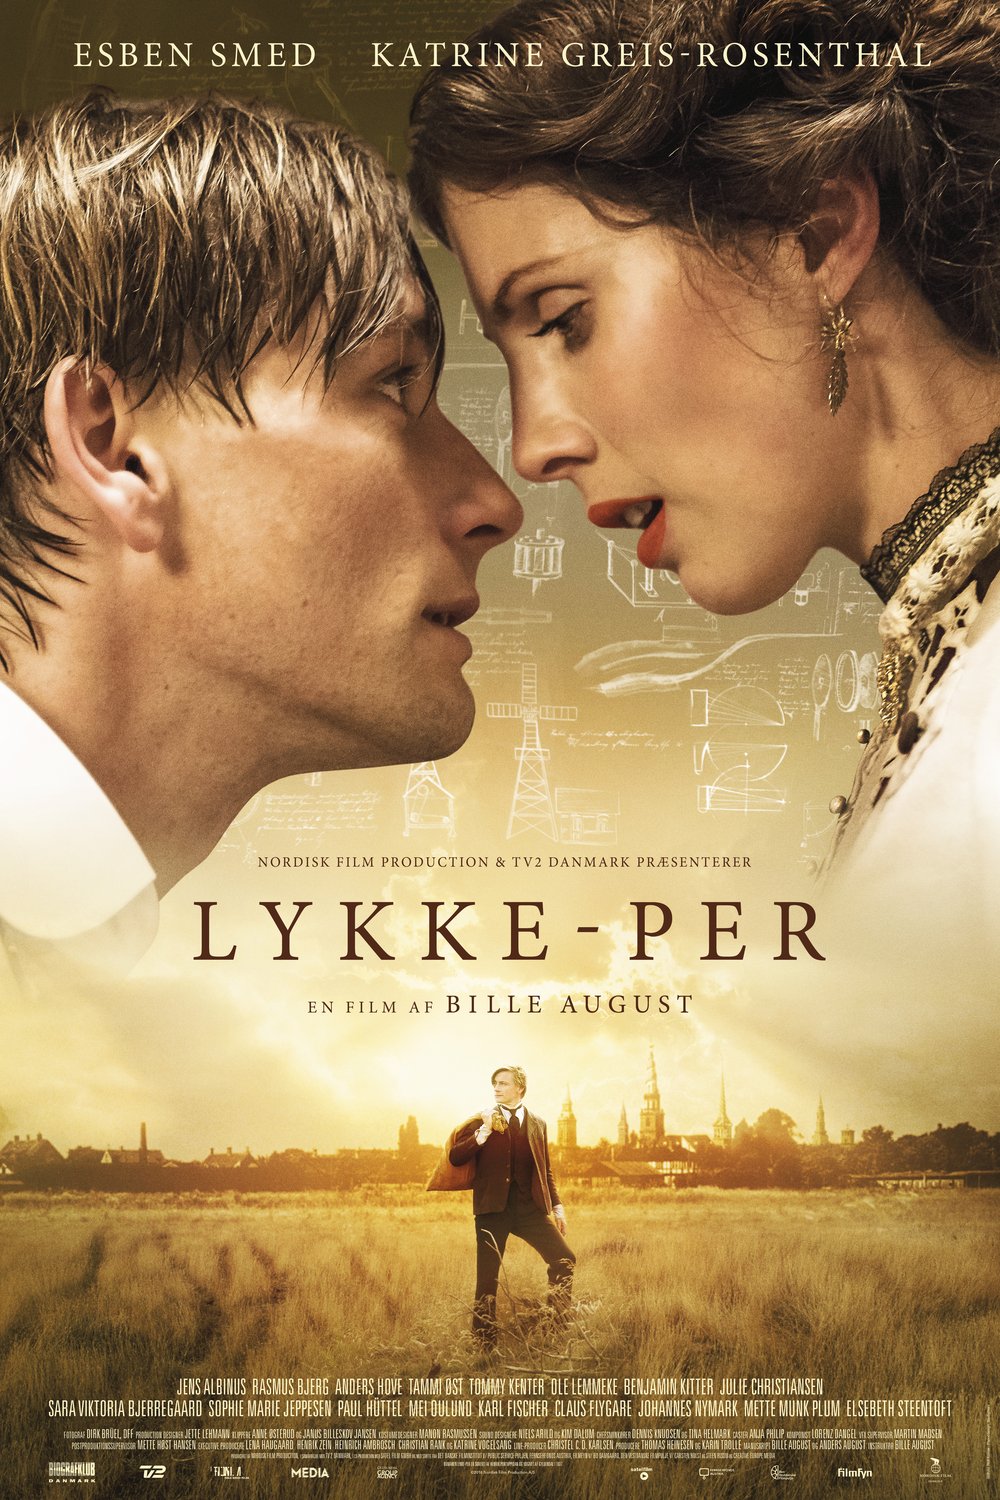 L'affiche originale du film Lykke-Per en danois